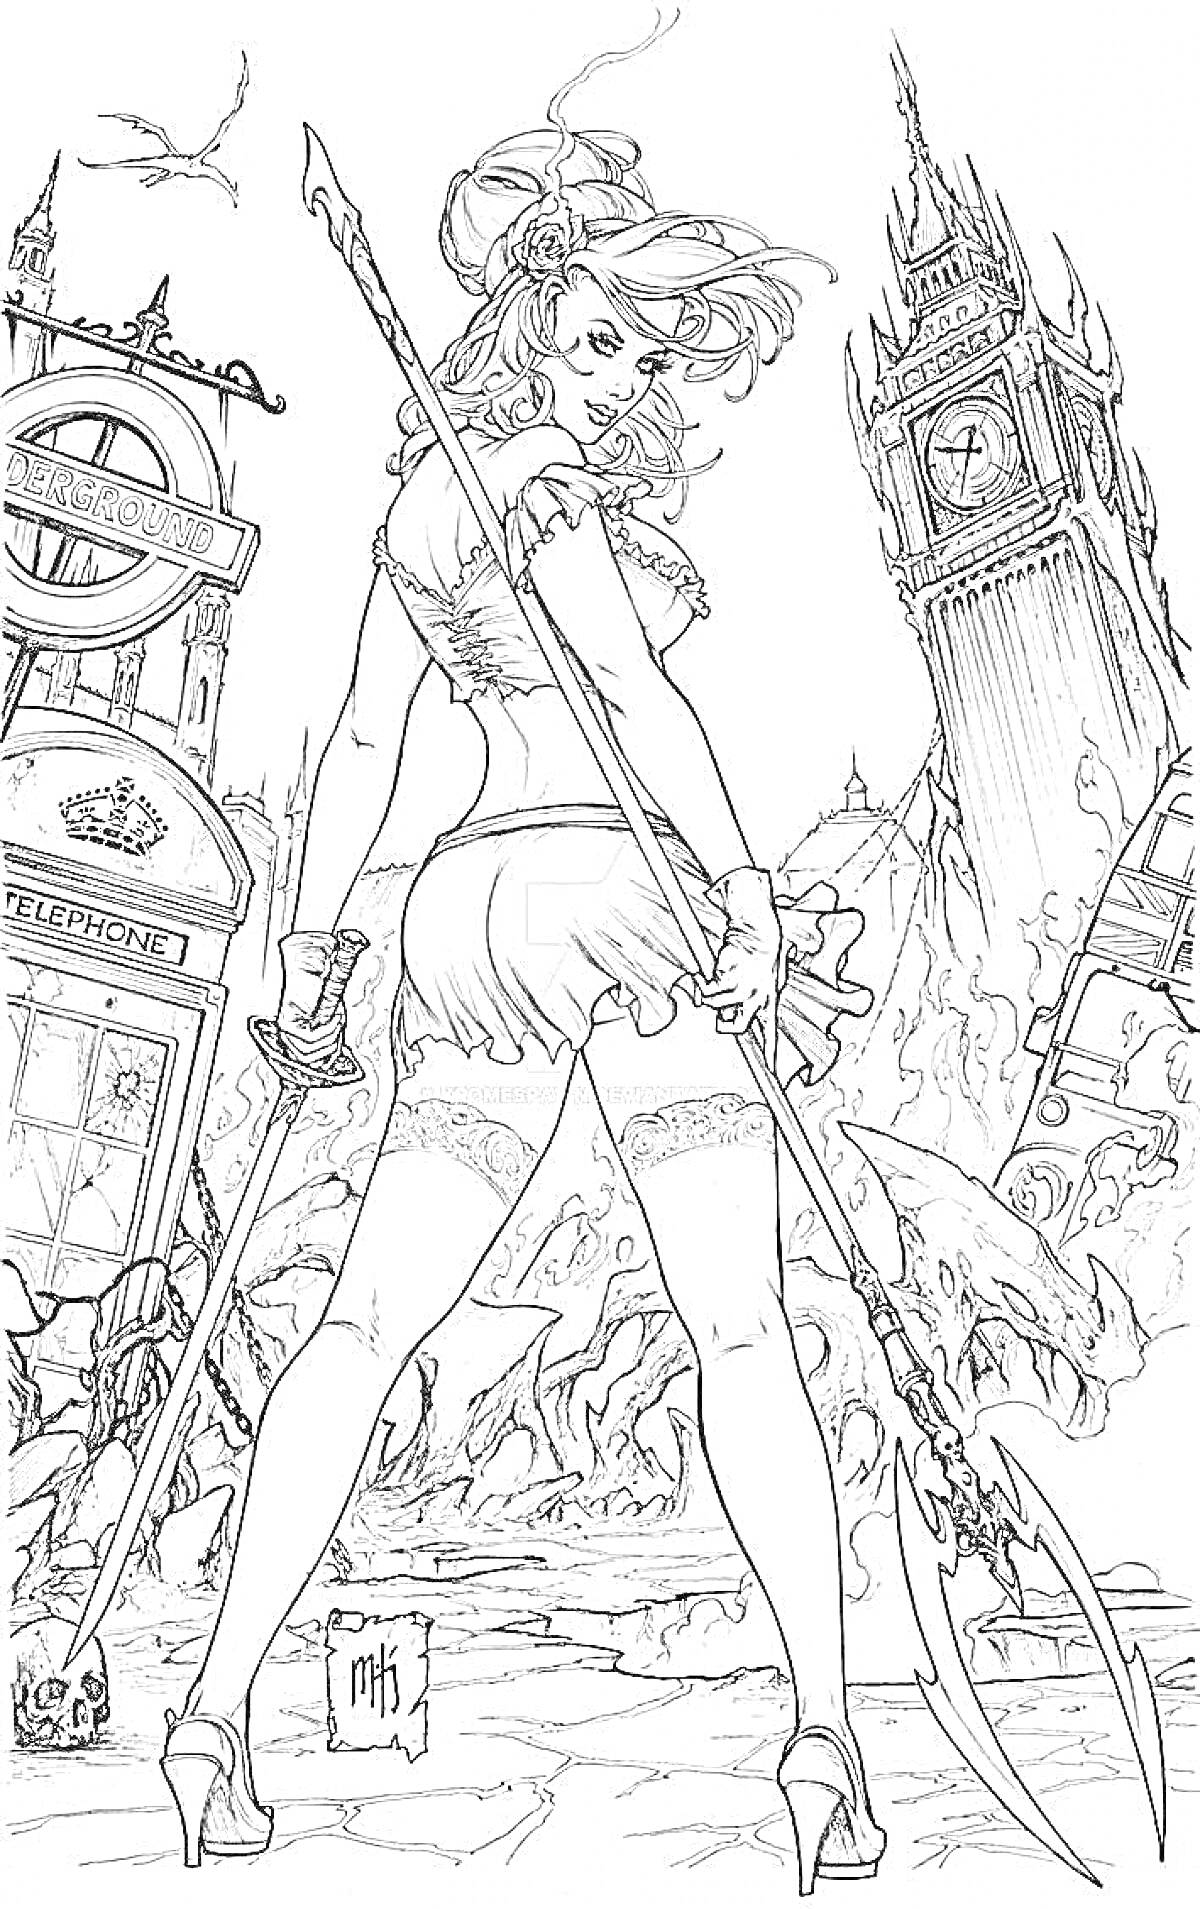 Раскраска Женщина в короткой юбке и чулках с мечом в руке, на фоне разрушенного города с Биг Беном и телефонной будкой